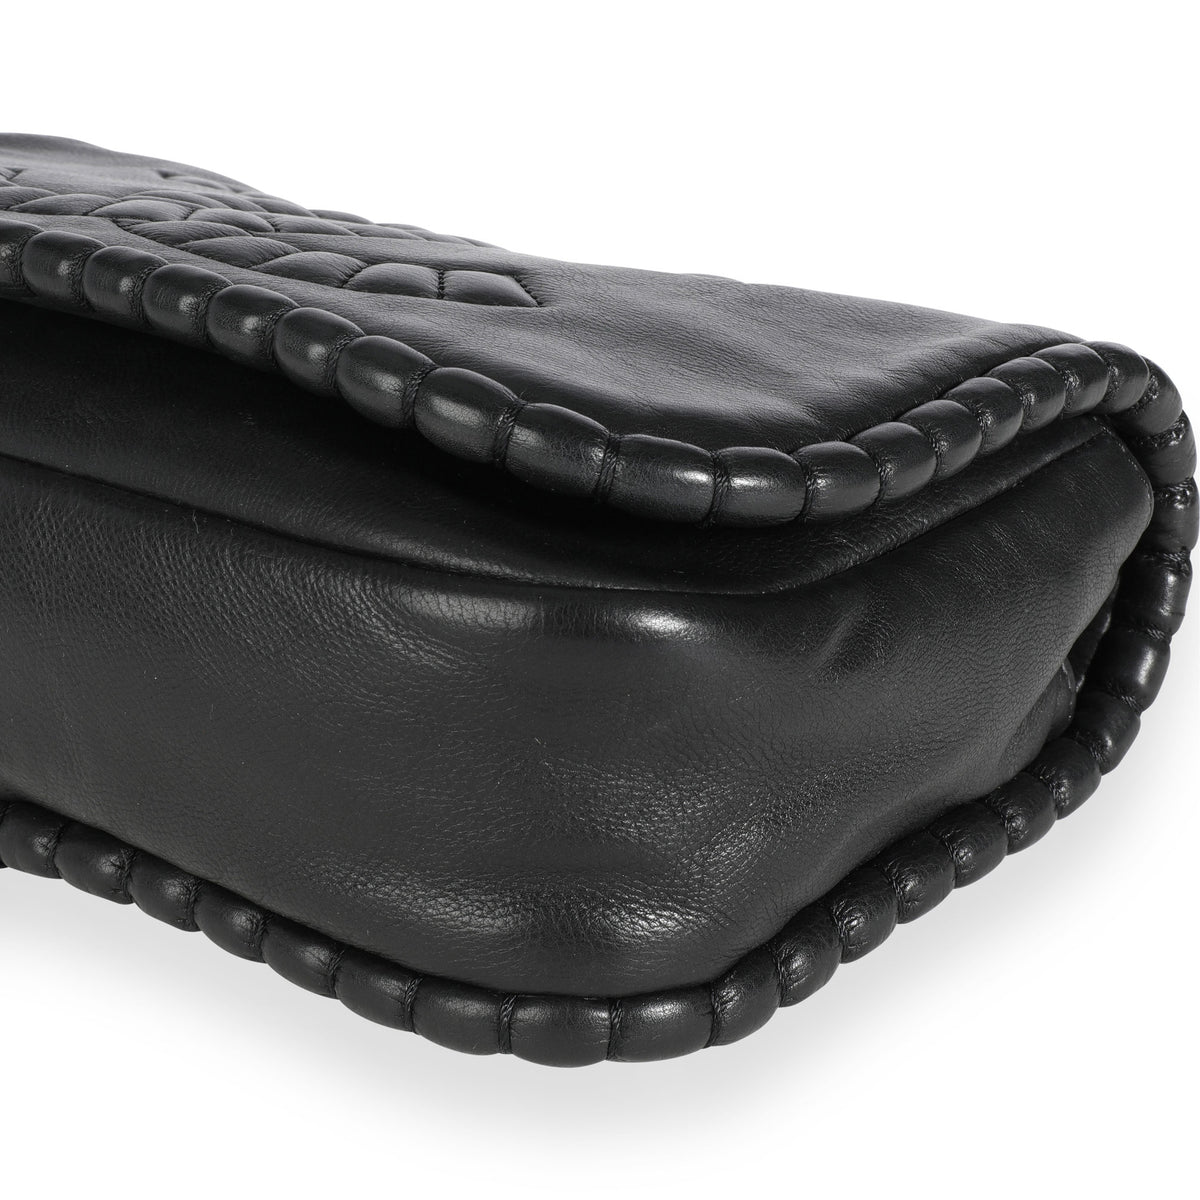 Chanel Black Leather Pleated CC Flap Bag, myGemma, NZ